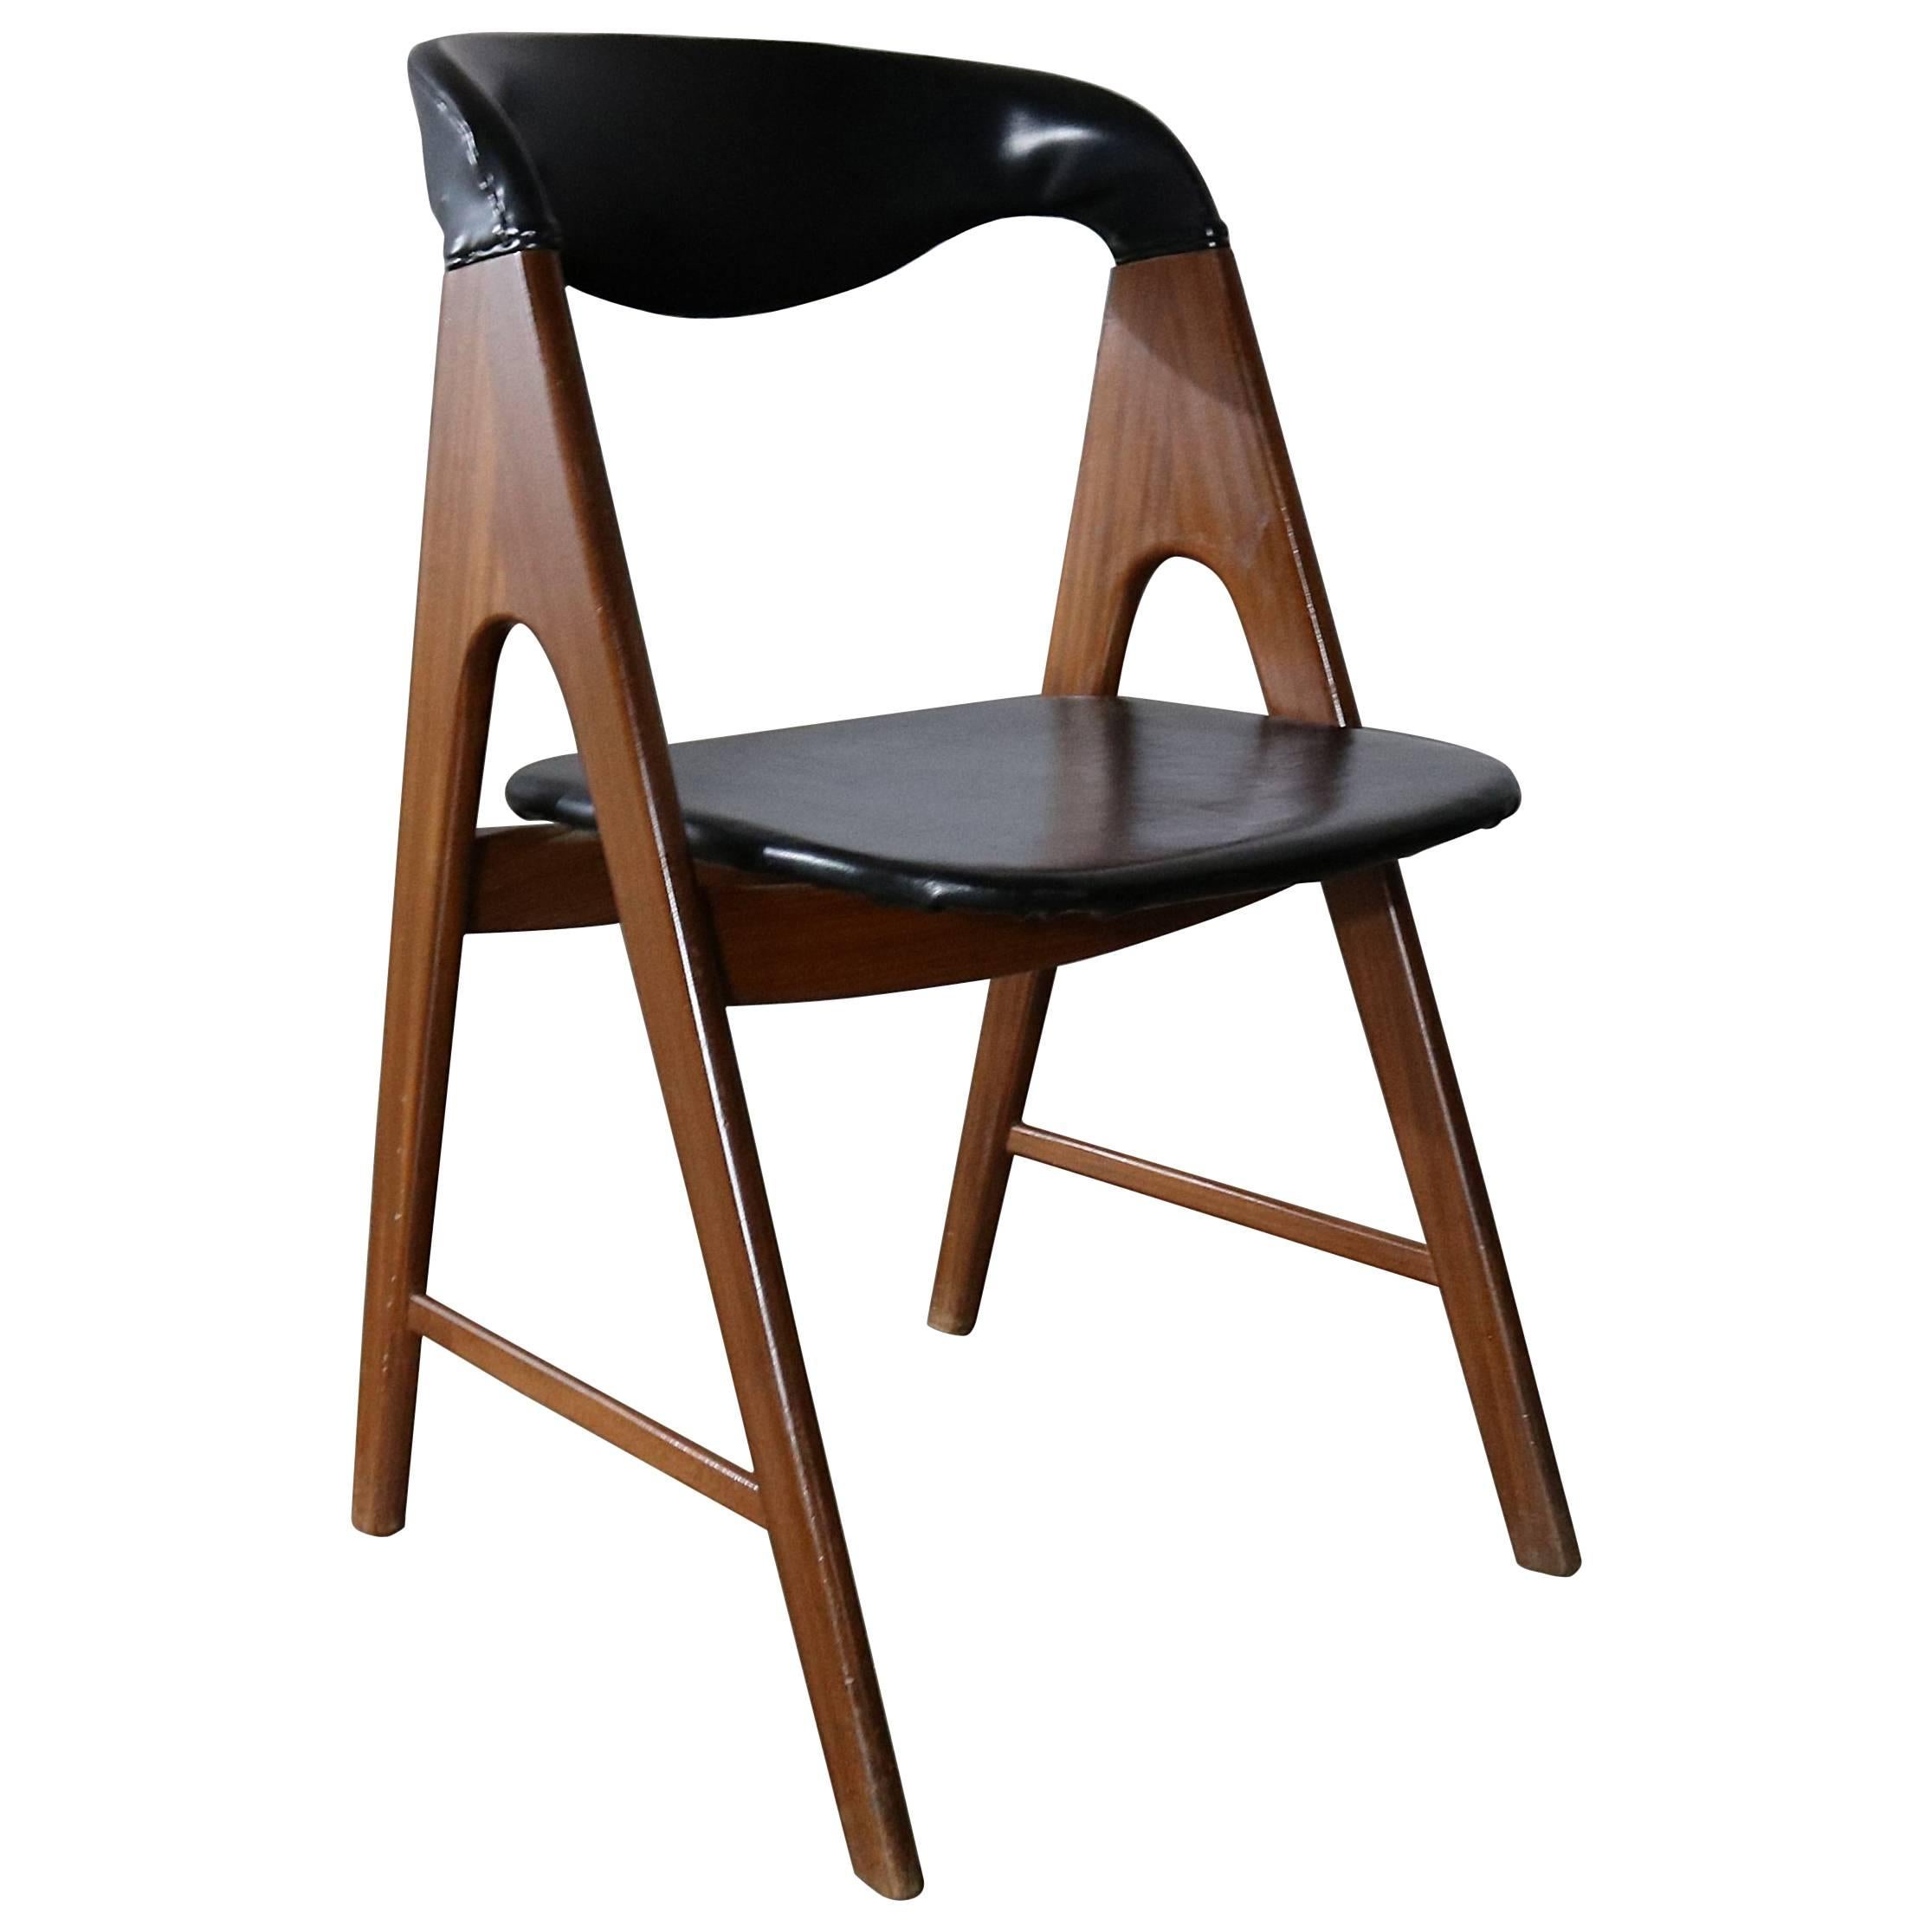 Frame Scandinavian Modern Side Chair Manner of Kai Kristiansen Compass Chair